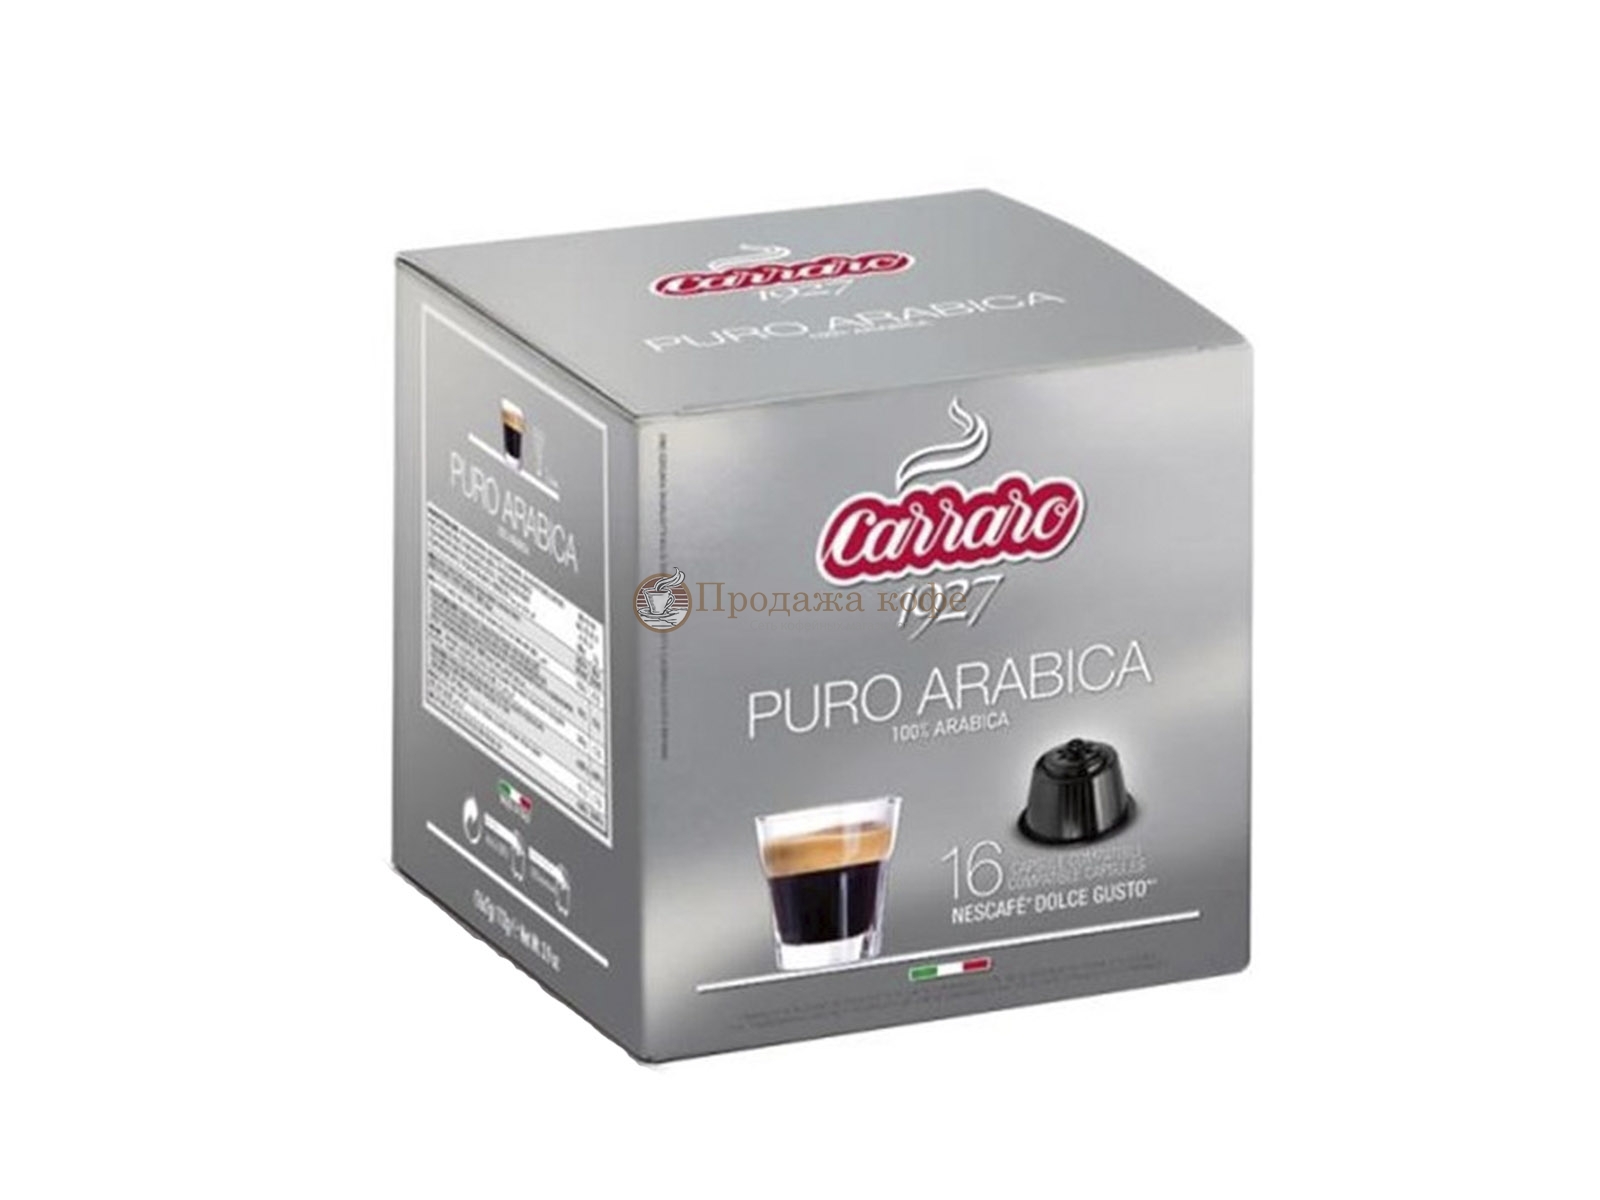 Кофе в капсулах Carraro Puro Arabica (Караро Пуро Арабика), упаковка 16 капсул, формат Dolce Gusto (Дольче Густо)